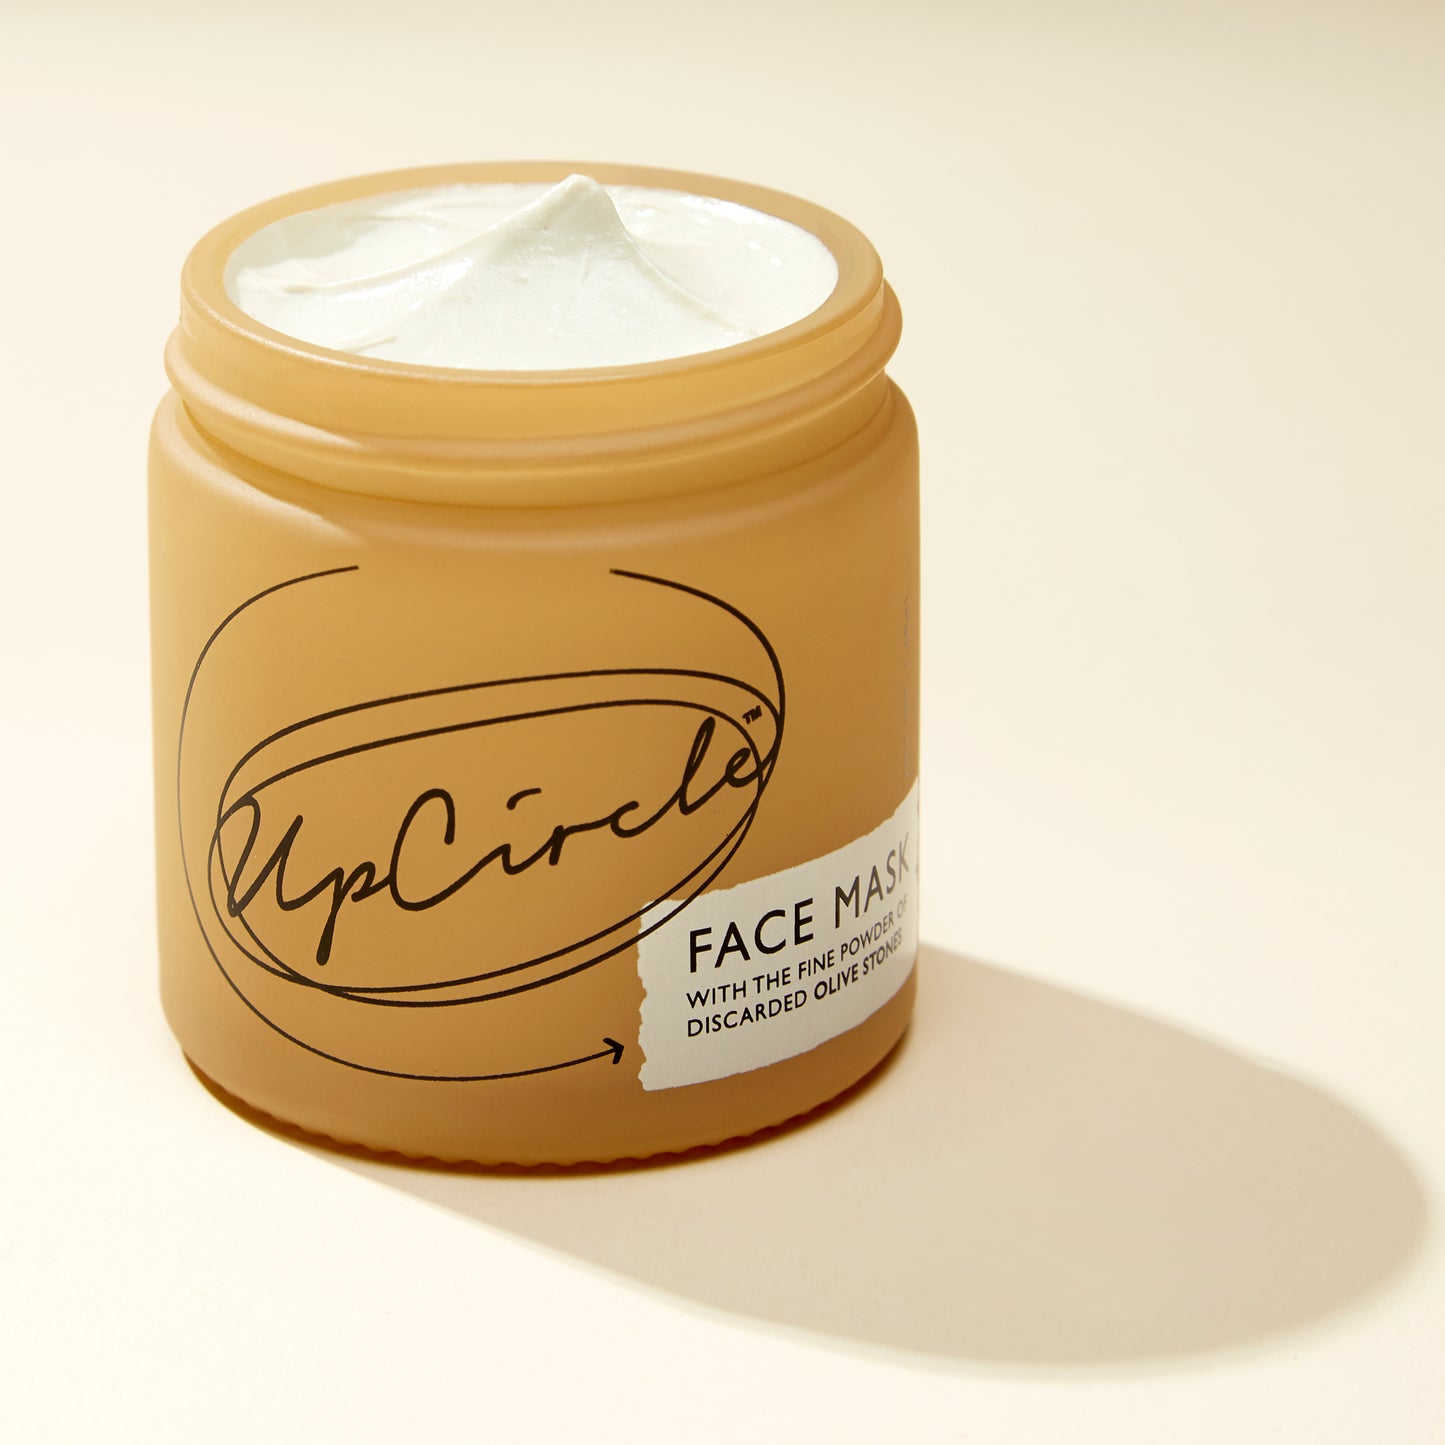 UpCircle Clarifying Face Mask with Olive Powder